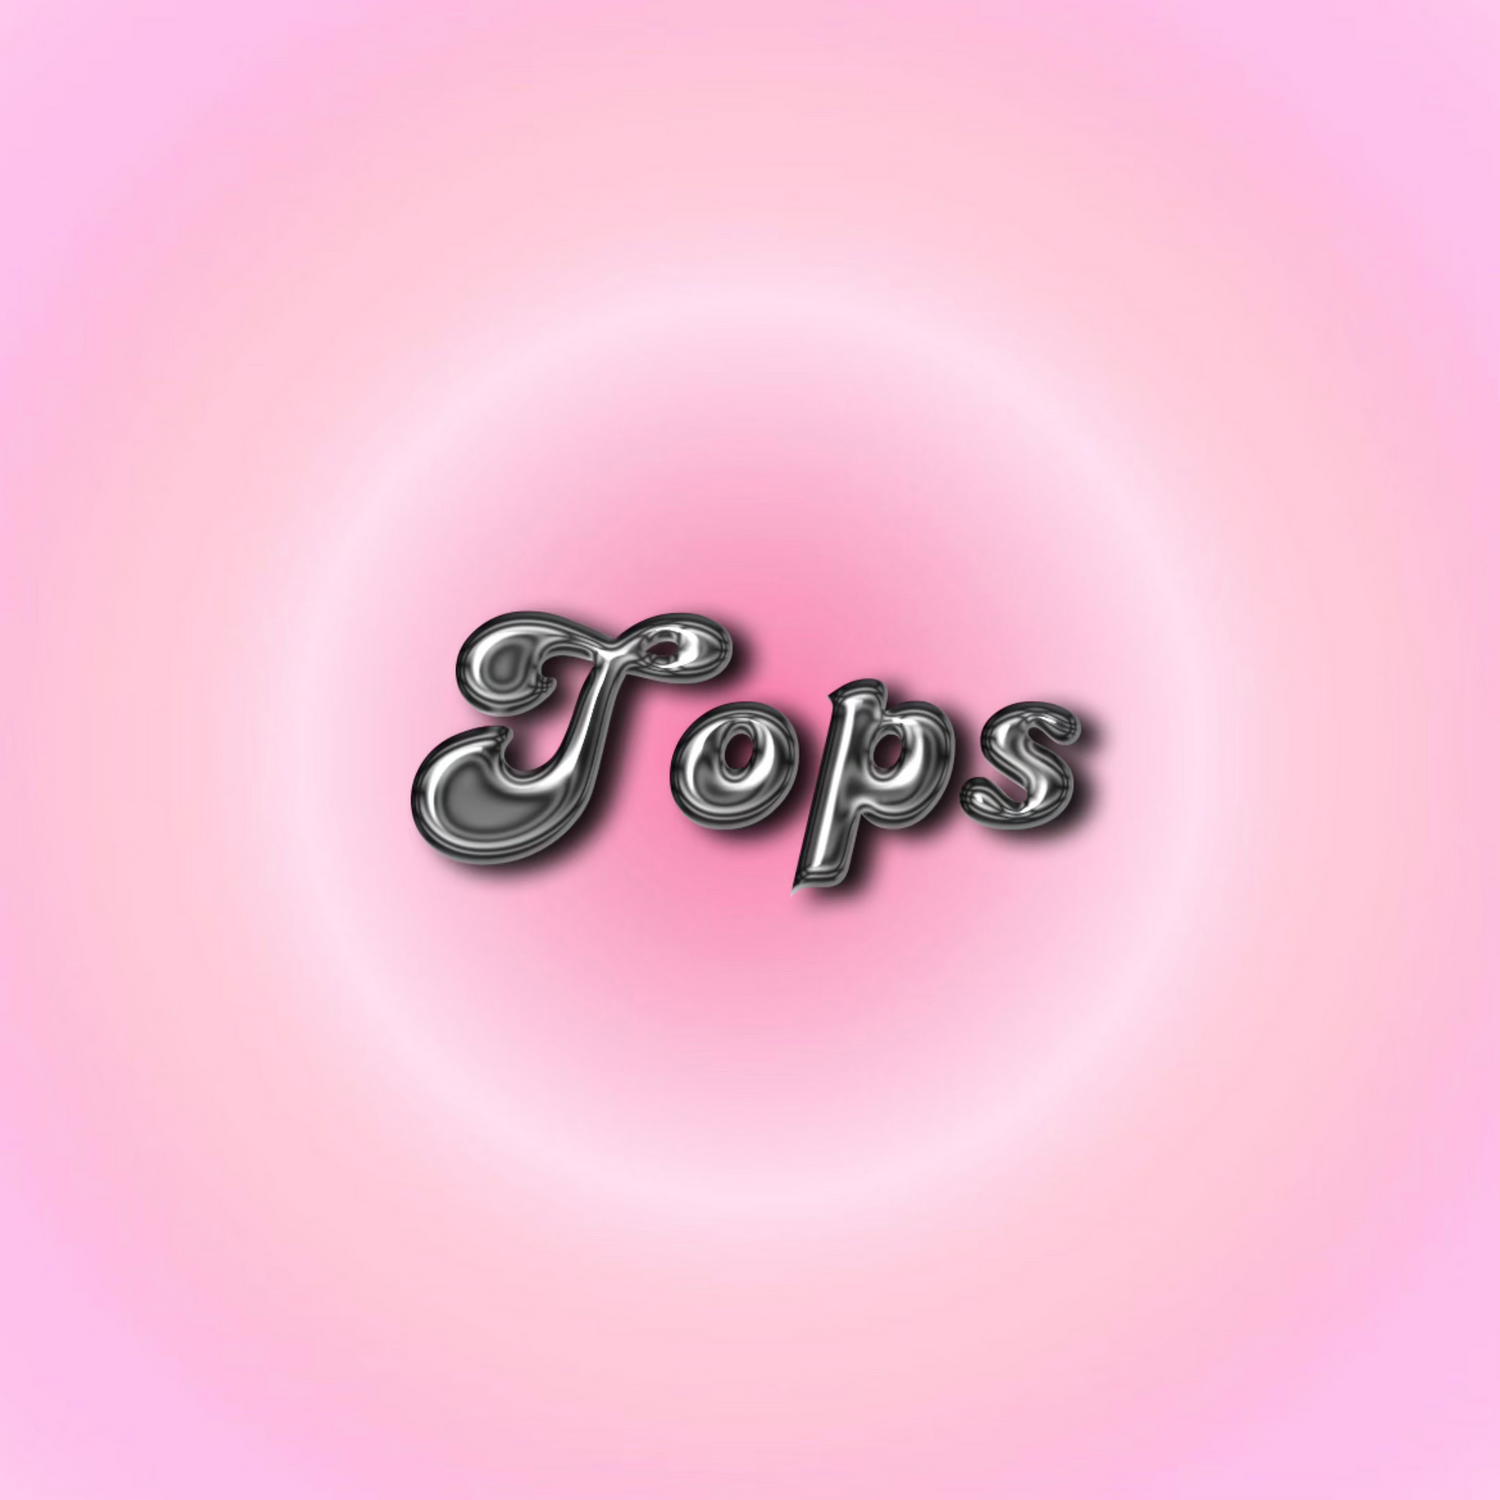 Tops